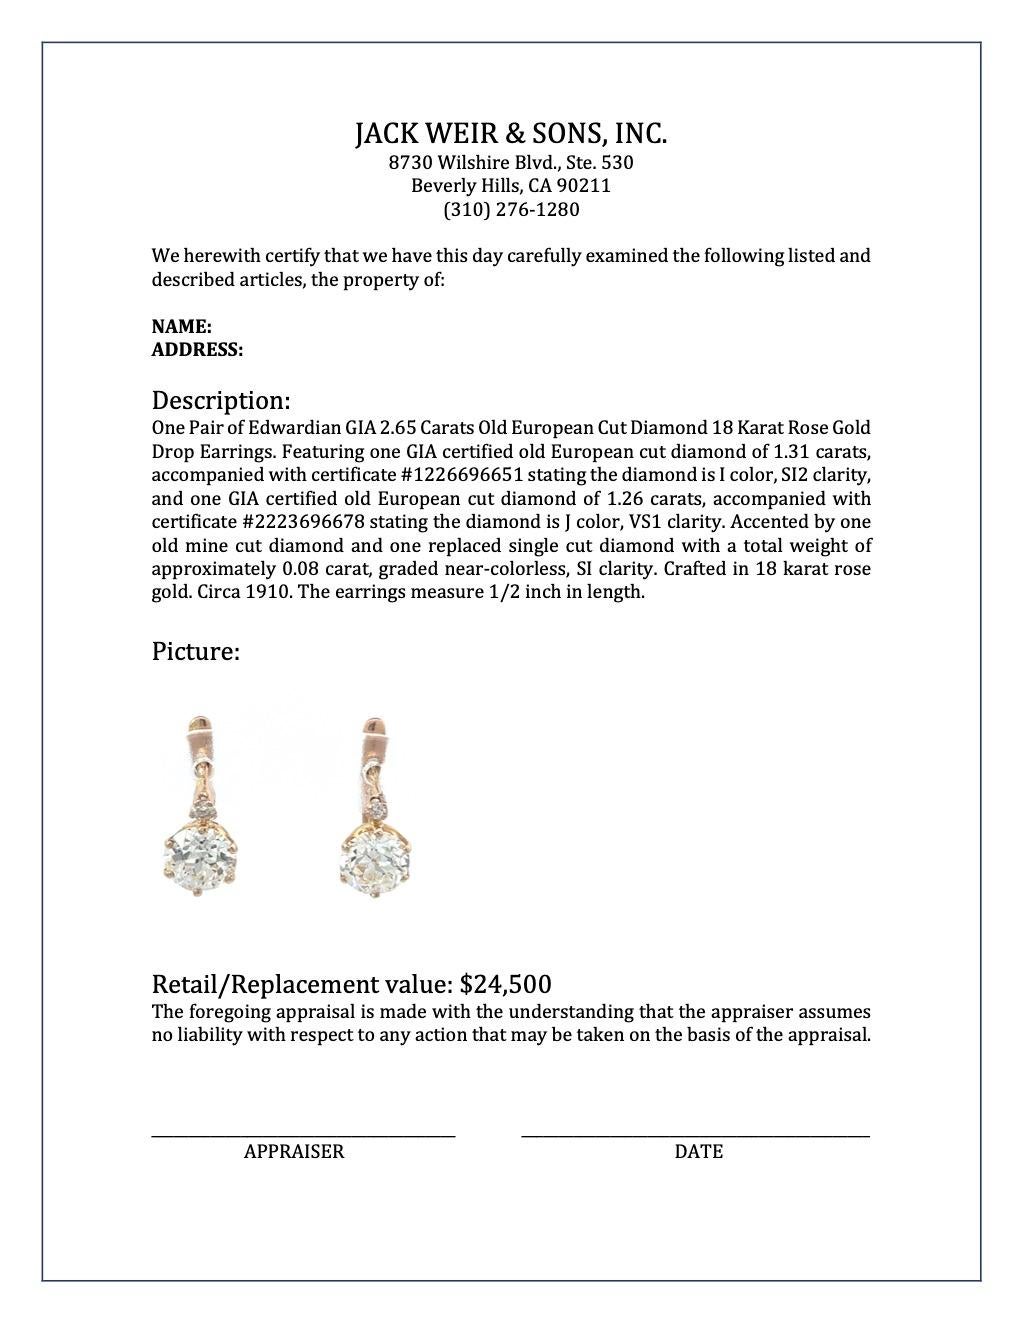 Edwardian GIA 2.65 Carats Diamond 18 Karat Rose Gold Drop Earrings 4